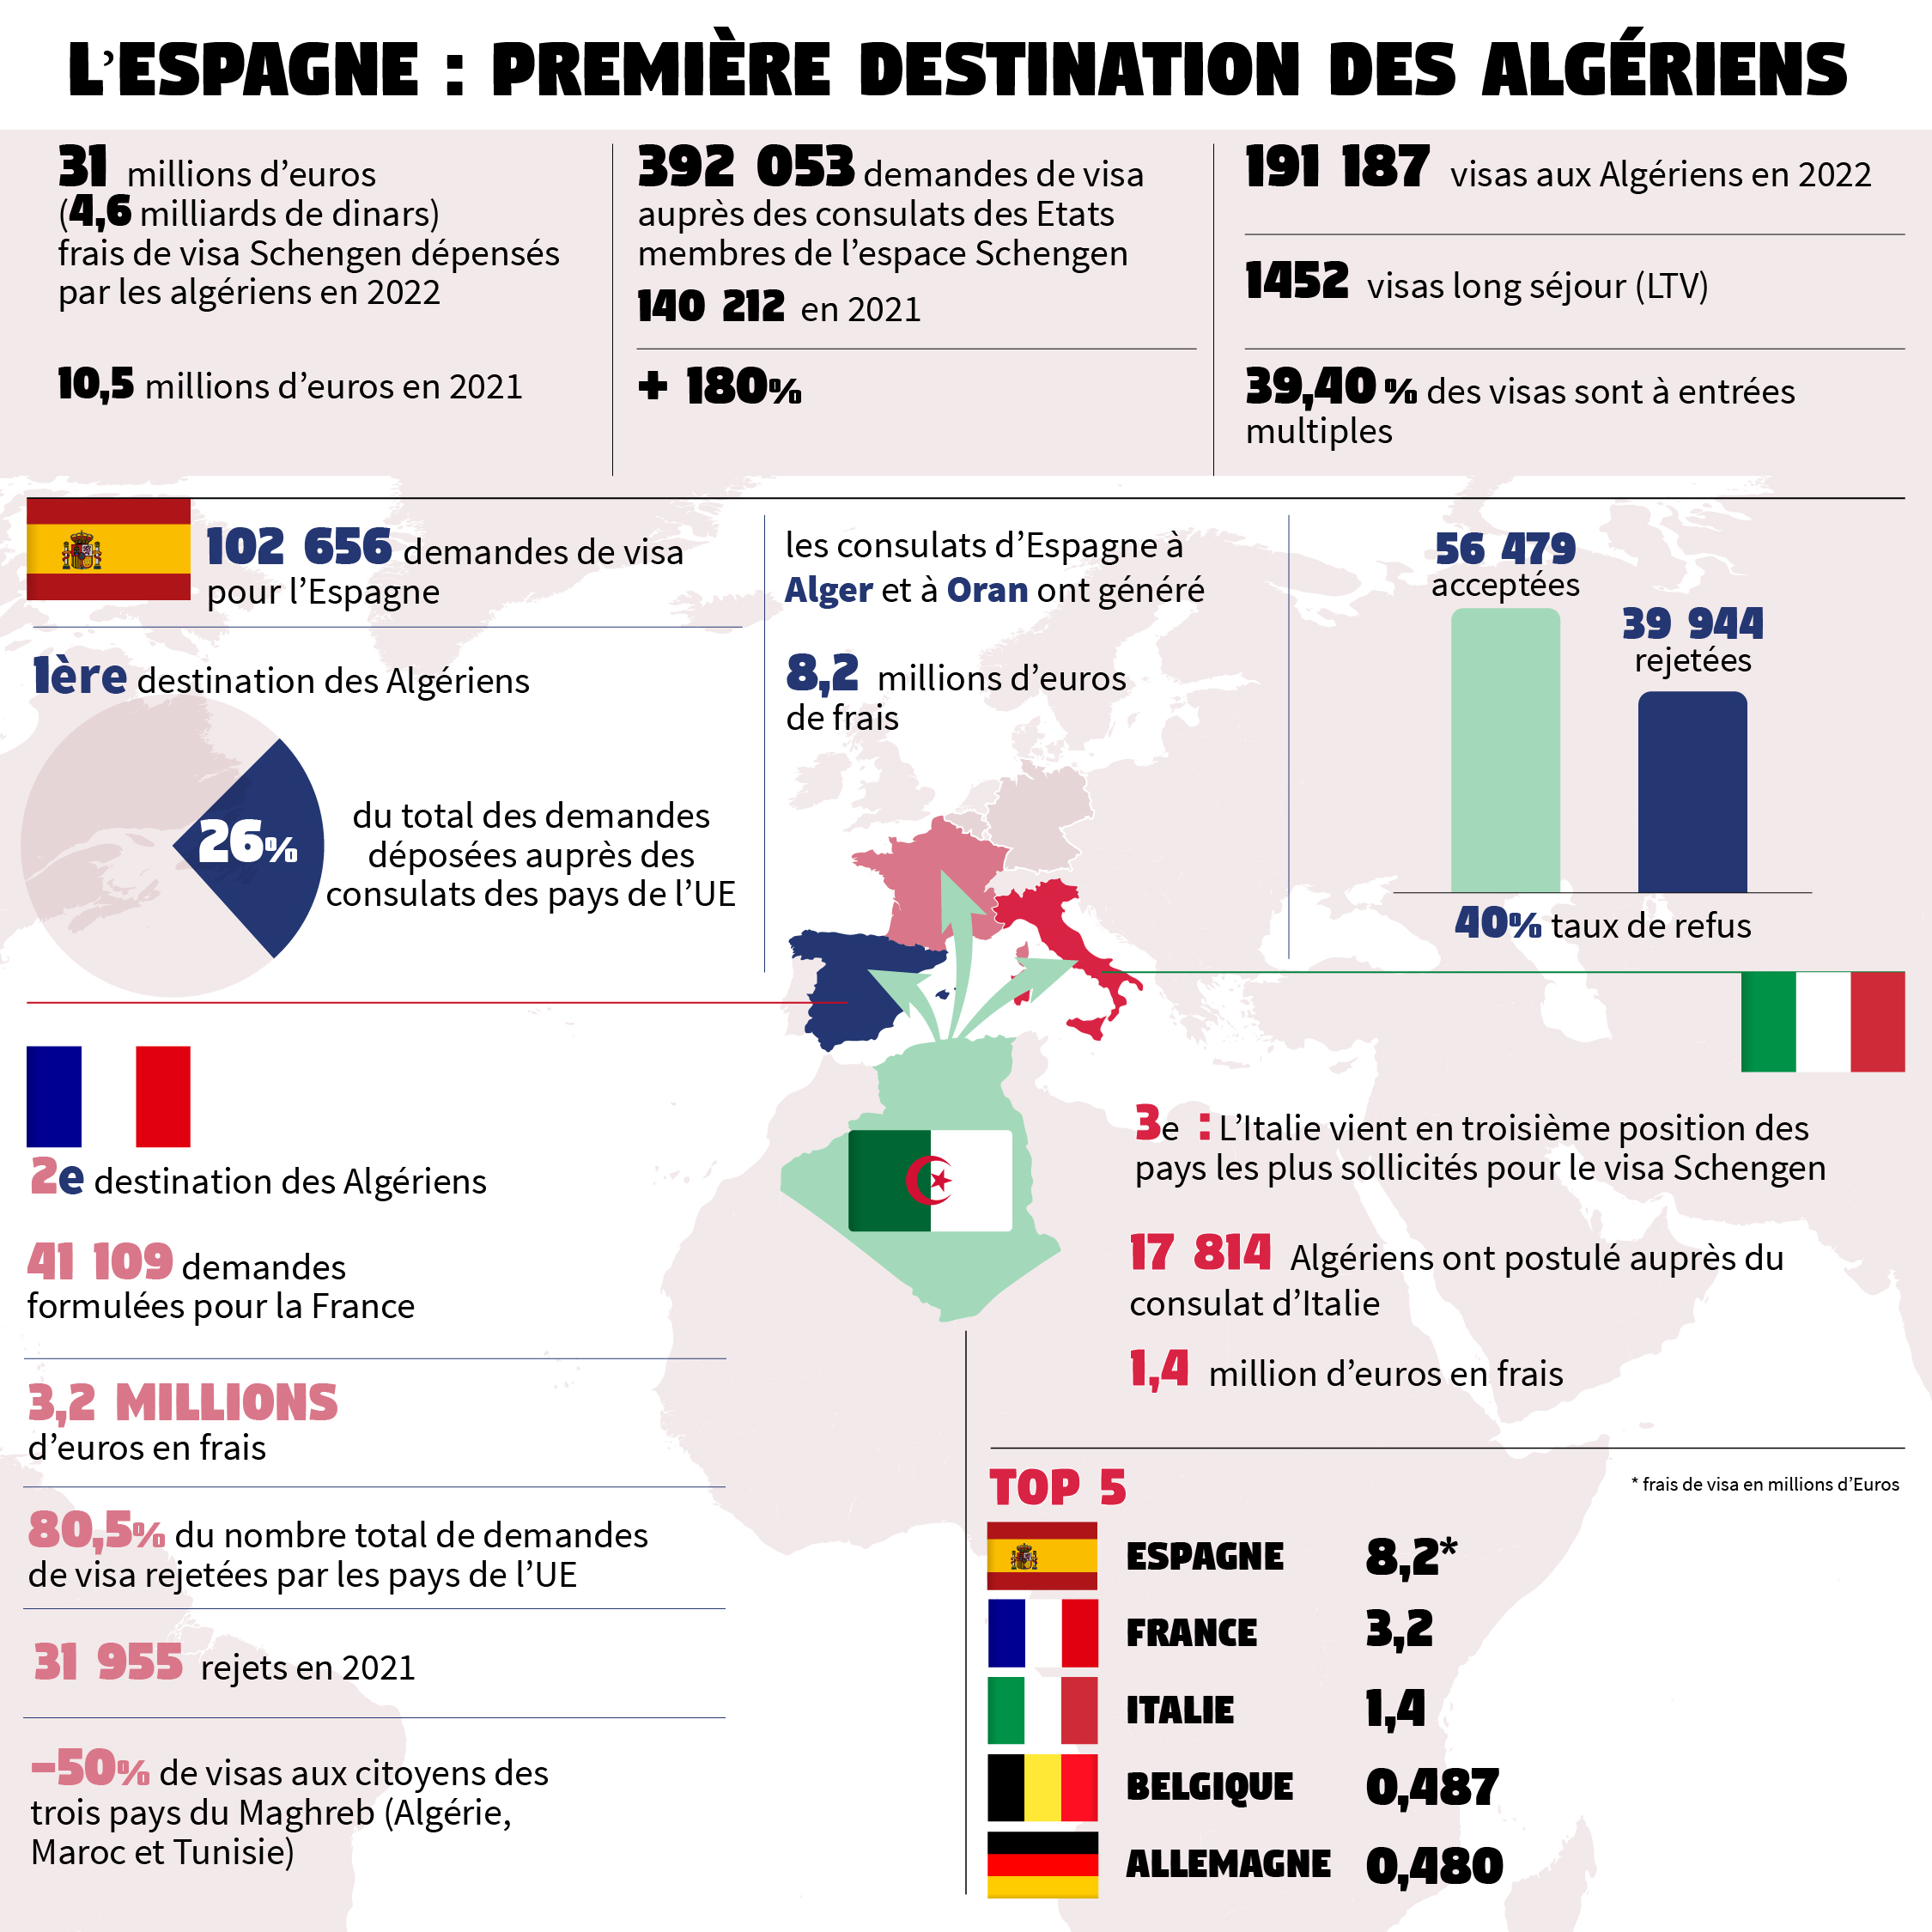 Cette infographie schématise les destinations européennes préférées des Algériens en 2022. Le nombre de leurs demandes de visa d’entrée dans les pays de l’espace Schengen a frôlé les 400 000, soit une croissance de plus 180 % par rapport à 2021. Ce qui représente une vraie aubaine pour les pays sollicités qui ont engrangé 31 millions d’euros, soit une croissance de plus 195 % par rapport à l’année précédente. Et ce, en sachant que 51 % des dossiers ont été rejetés. Avec un peu plus de 41 000 demandes formulées, la France n’est plus le premier pays européen prisé par les demandes de visa déposées en Algérie. Elle est désormais deuxième, loin derrière l’Espagne qui en a comptabilisé plus de 102 000. Ce qui représente 26 % du total des dossiers de visas constitués auprès des chancelleries européennes. Cela a permis aux consulats espagnols, à Alger et à Oran, de gagner la bagatelle de 8,2 millions d’euros, contre 3,2 millions d’euros encaissés par le réseau consulaire français en Algérie (consulats d’Alger, Oran, Annaba et Constantine). L’Italie conclut le podium, avec près de 18 000 demandes réceptionnées et 1,4 millions d’euros de frais générés.